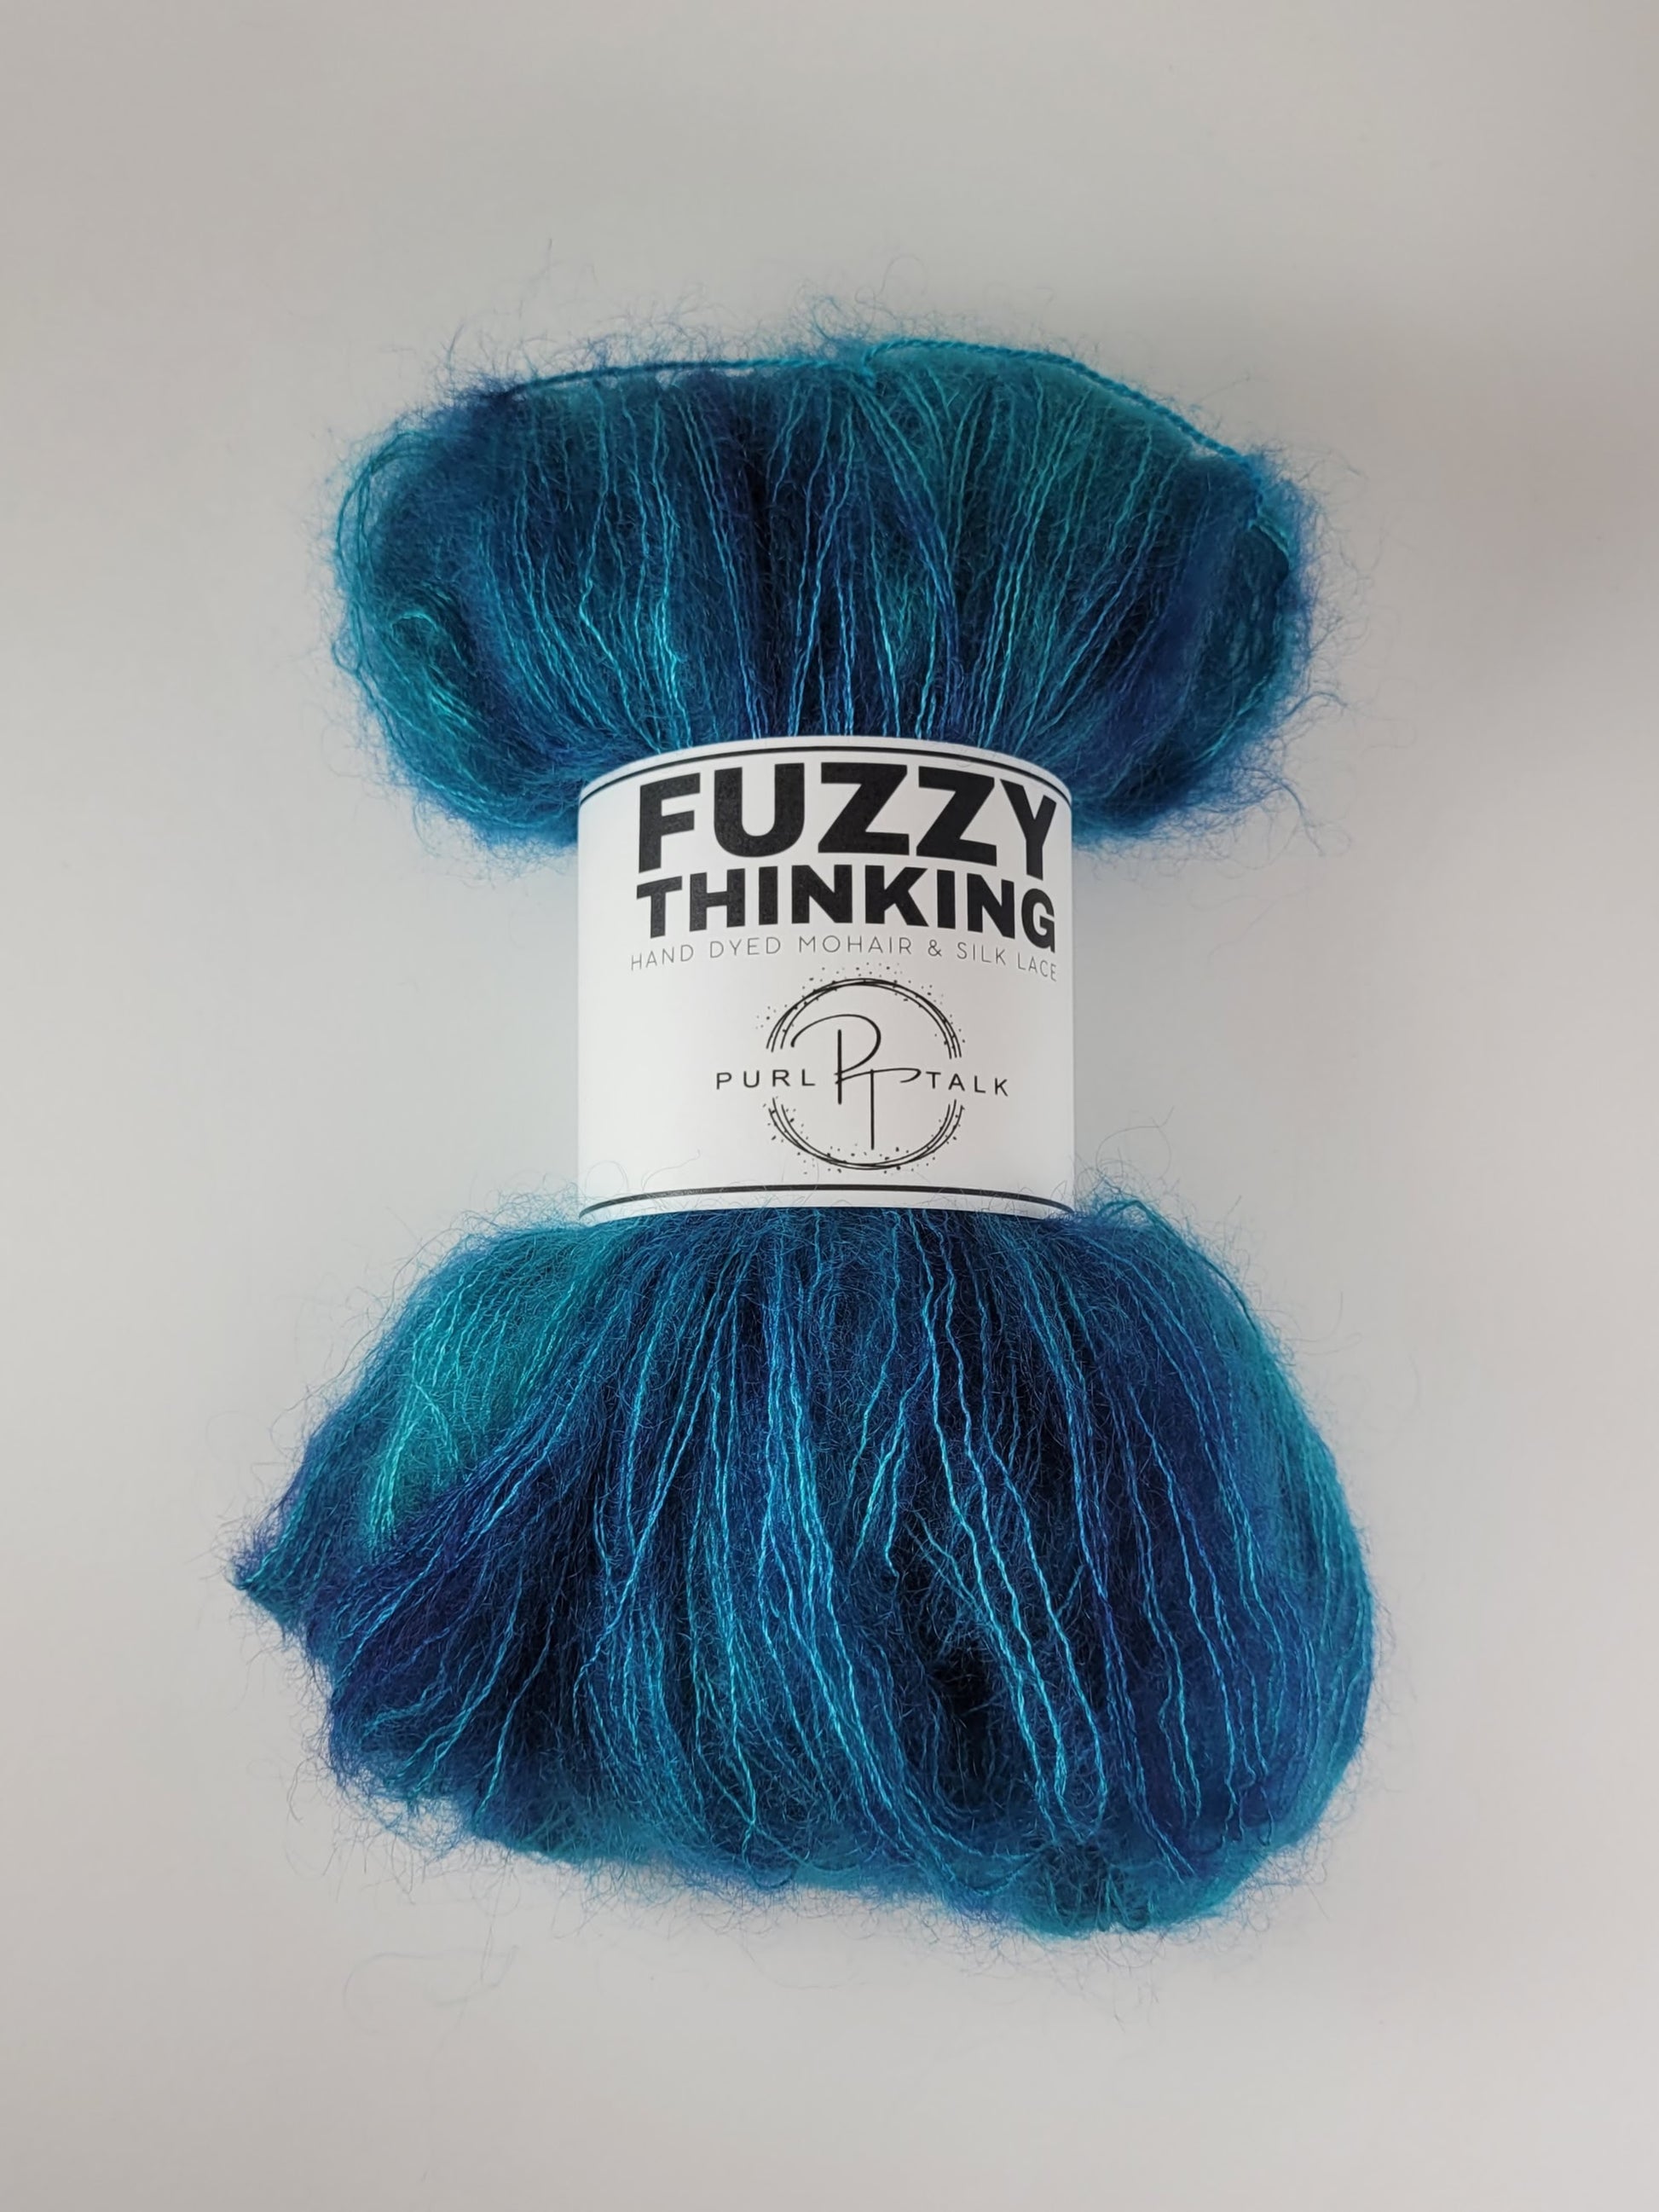 Gala Flok Multicolor Eyelash Yarn Turquoise - Humboldt Haberdashery